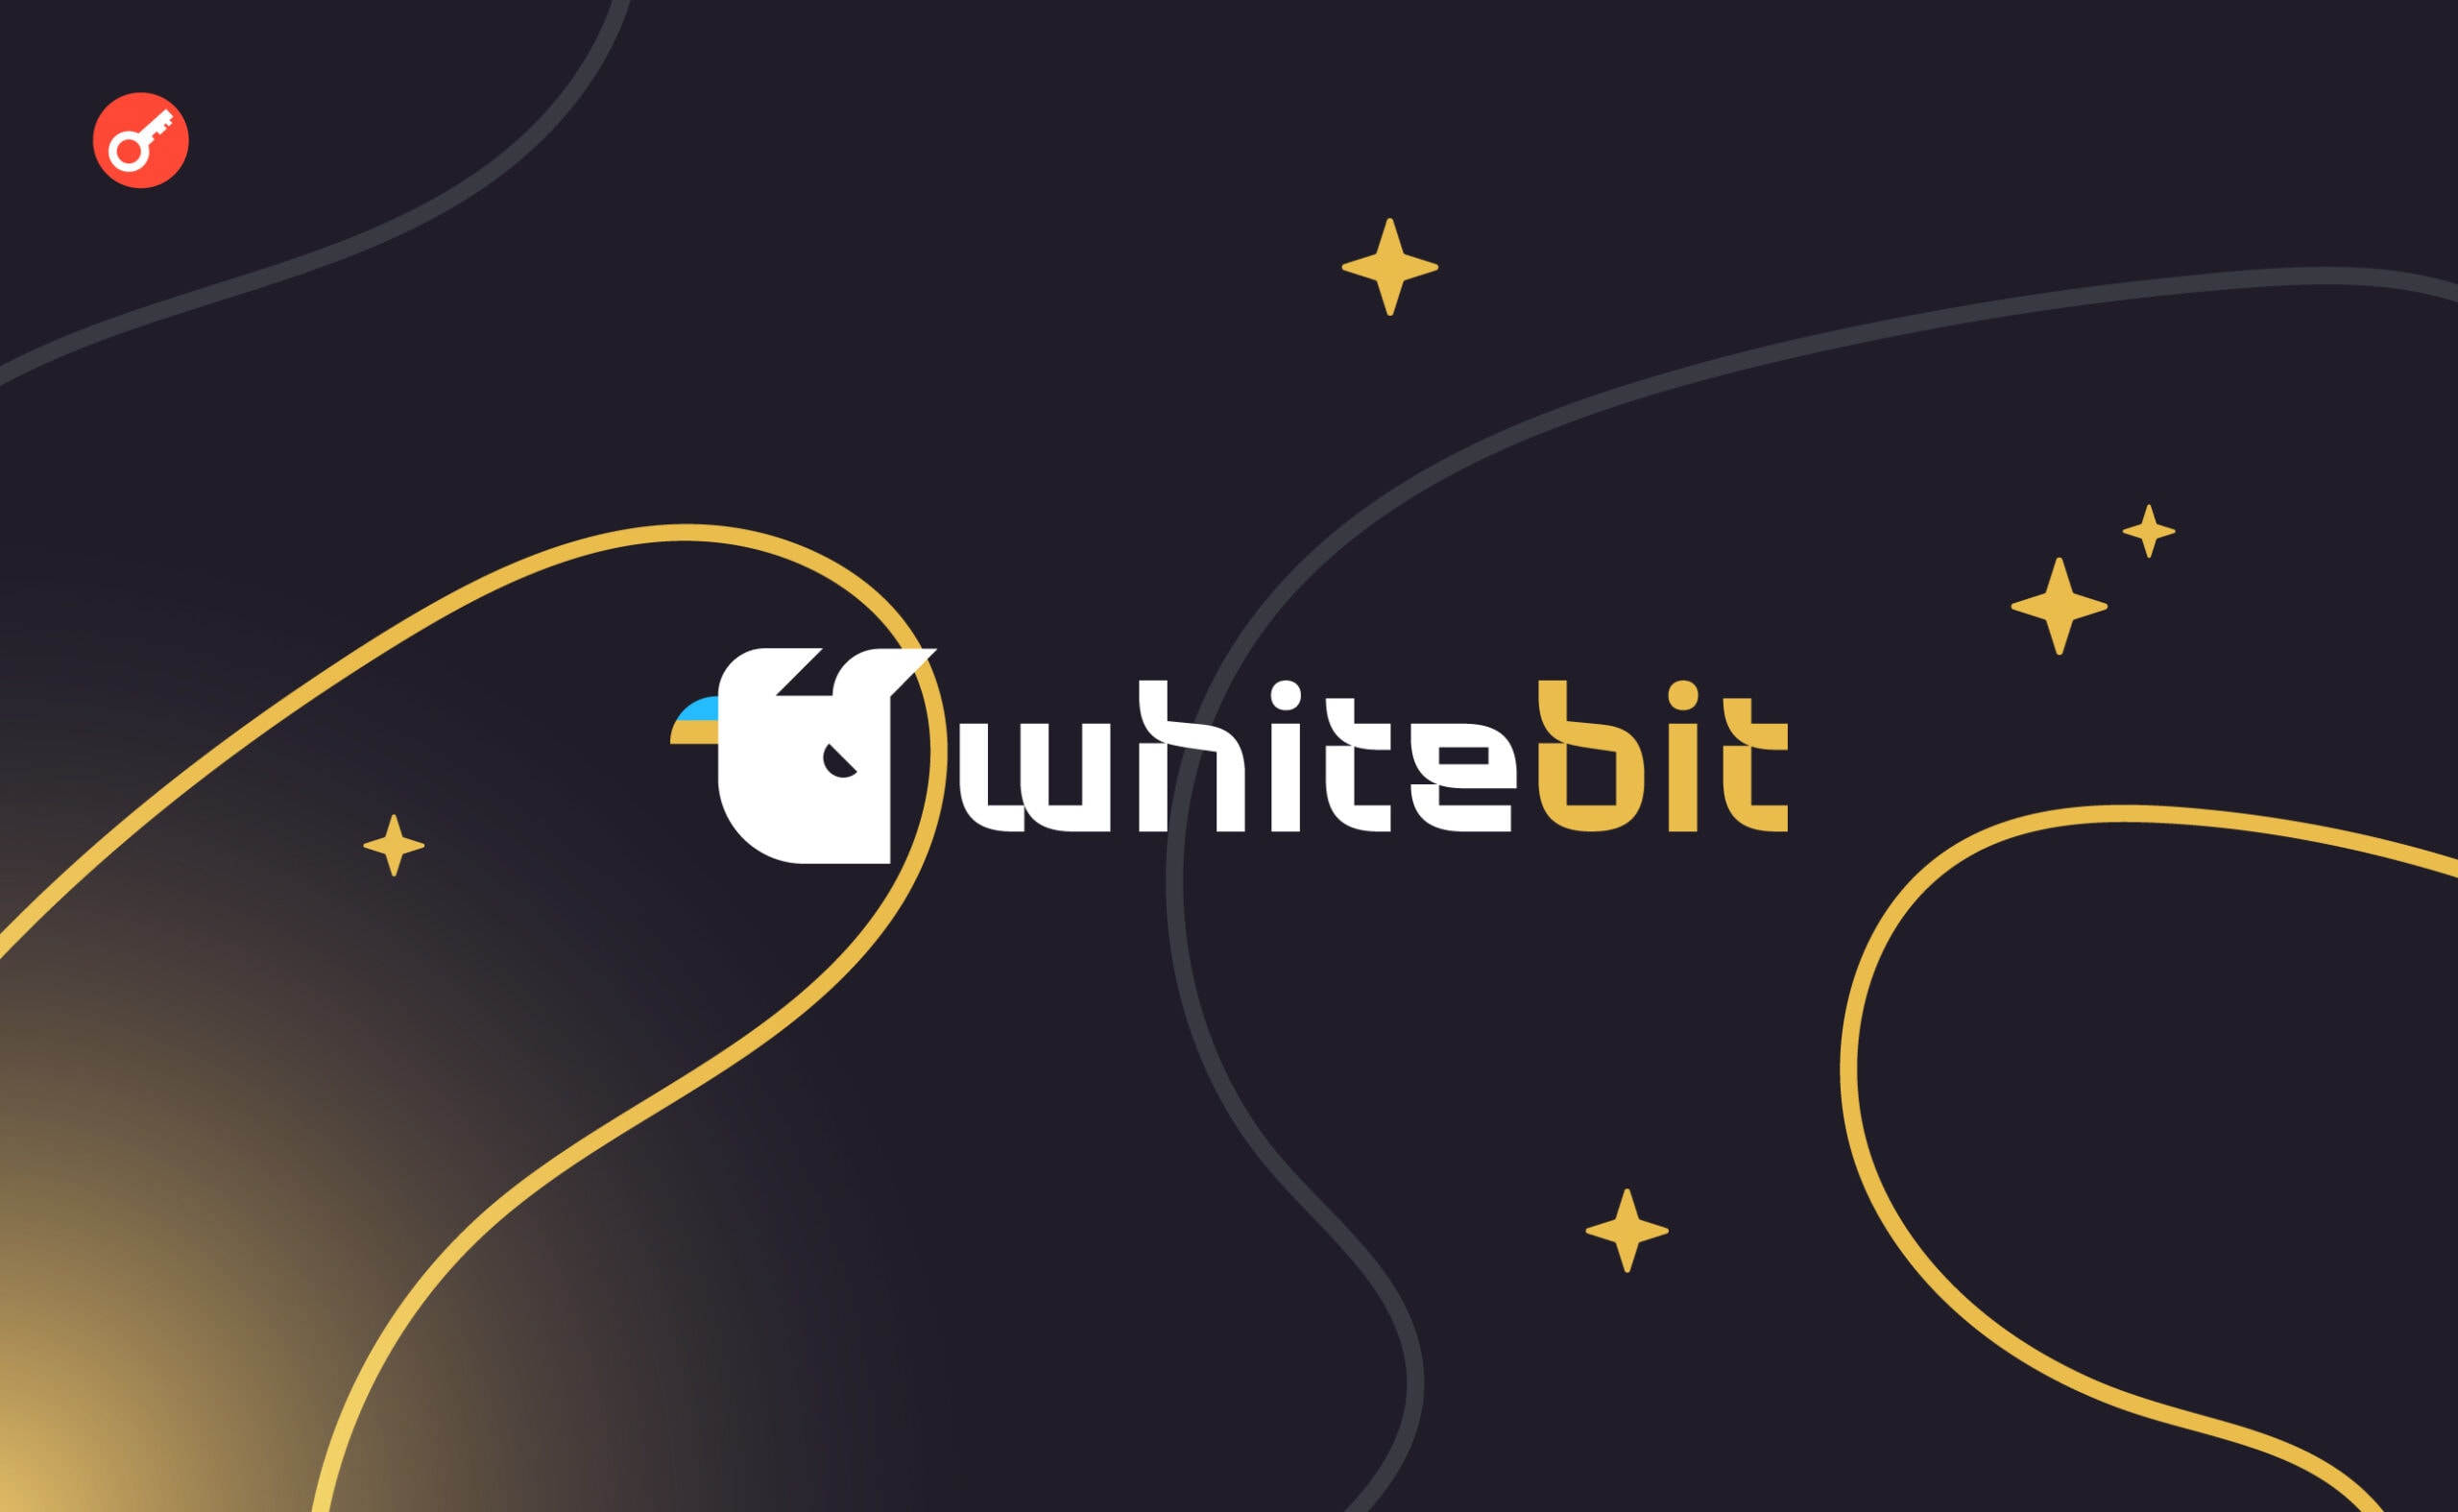 WhiteBIT выпустила подарочные карты в USDT на платформе G2A. Заглавный коллаж новости.